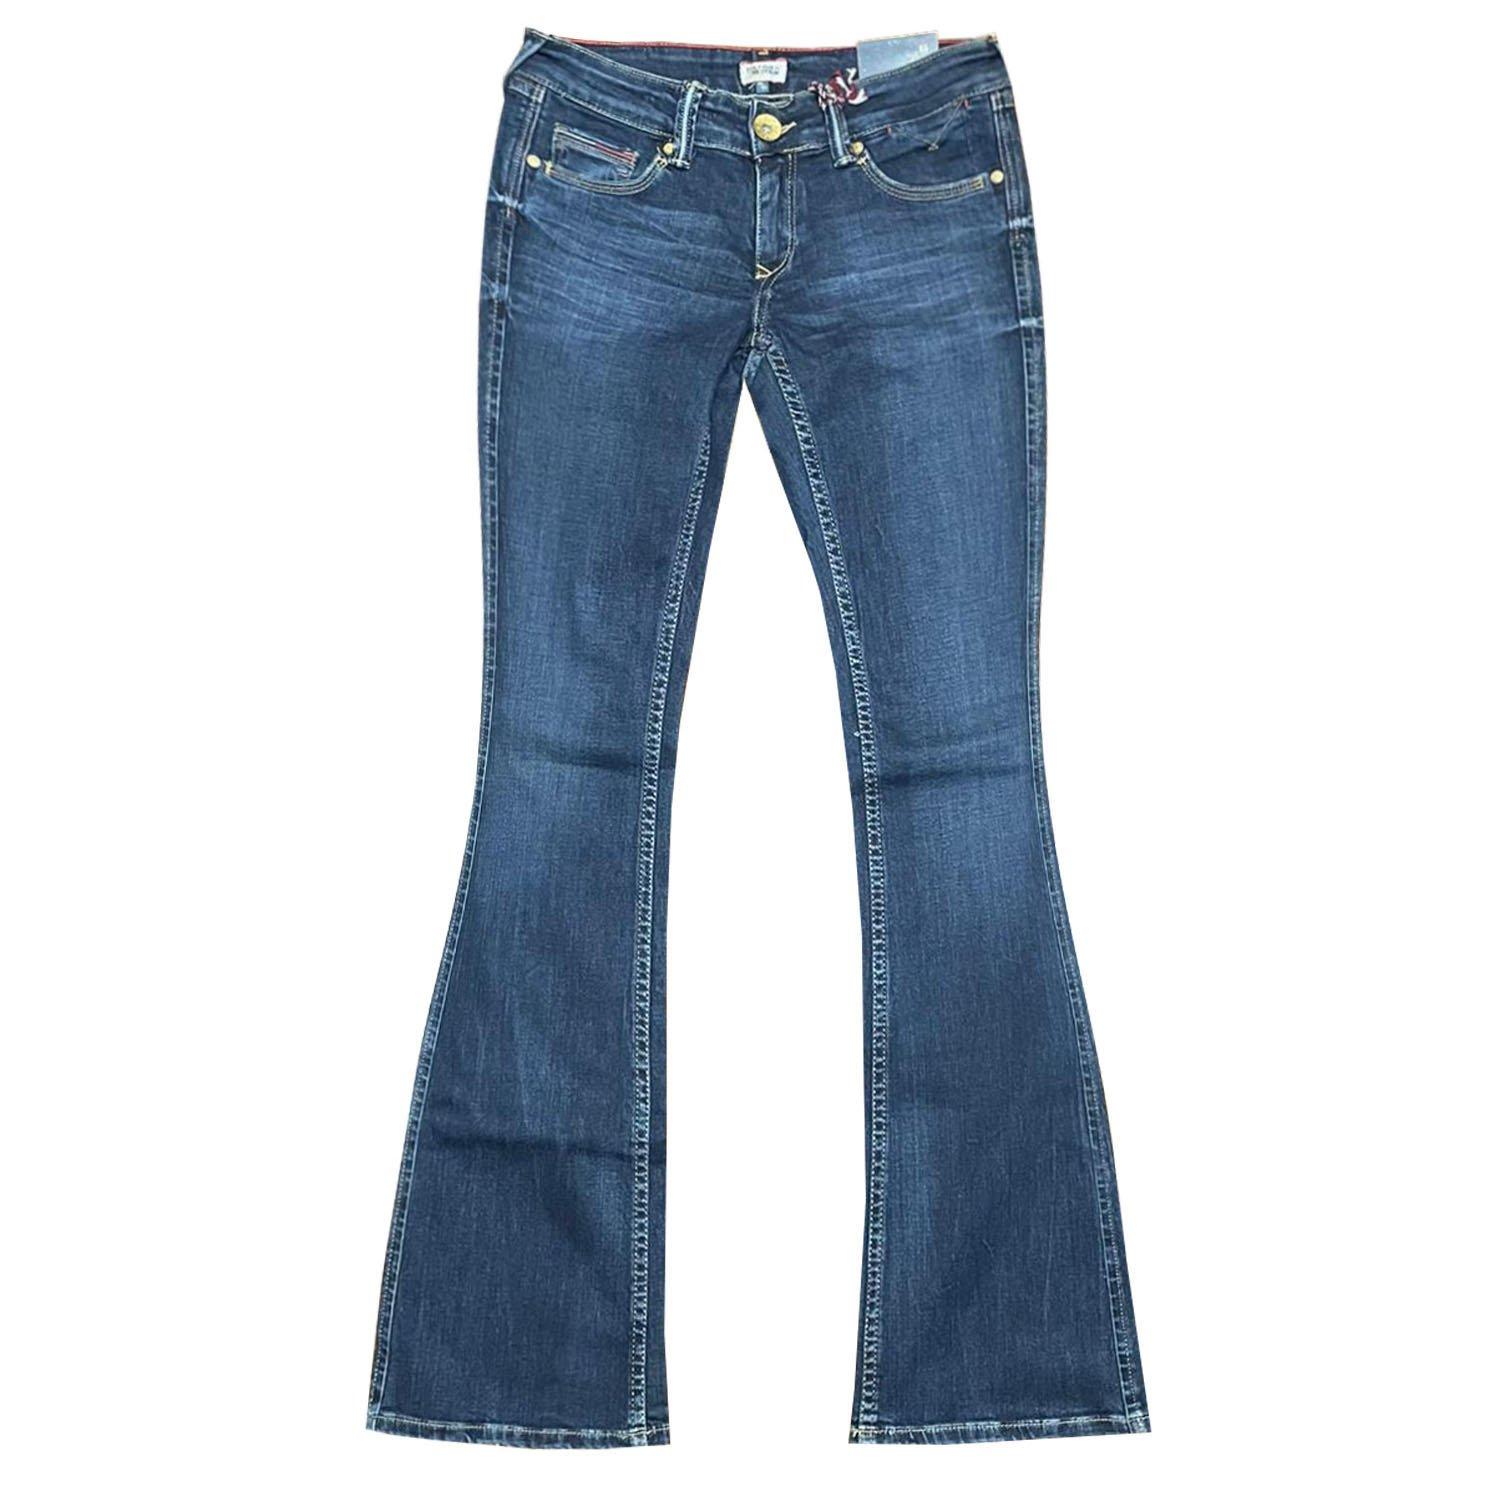 يملك القدوم يحمي hilfiger sophie bootcut jeans - diyscholars.com